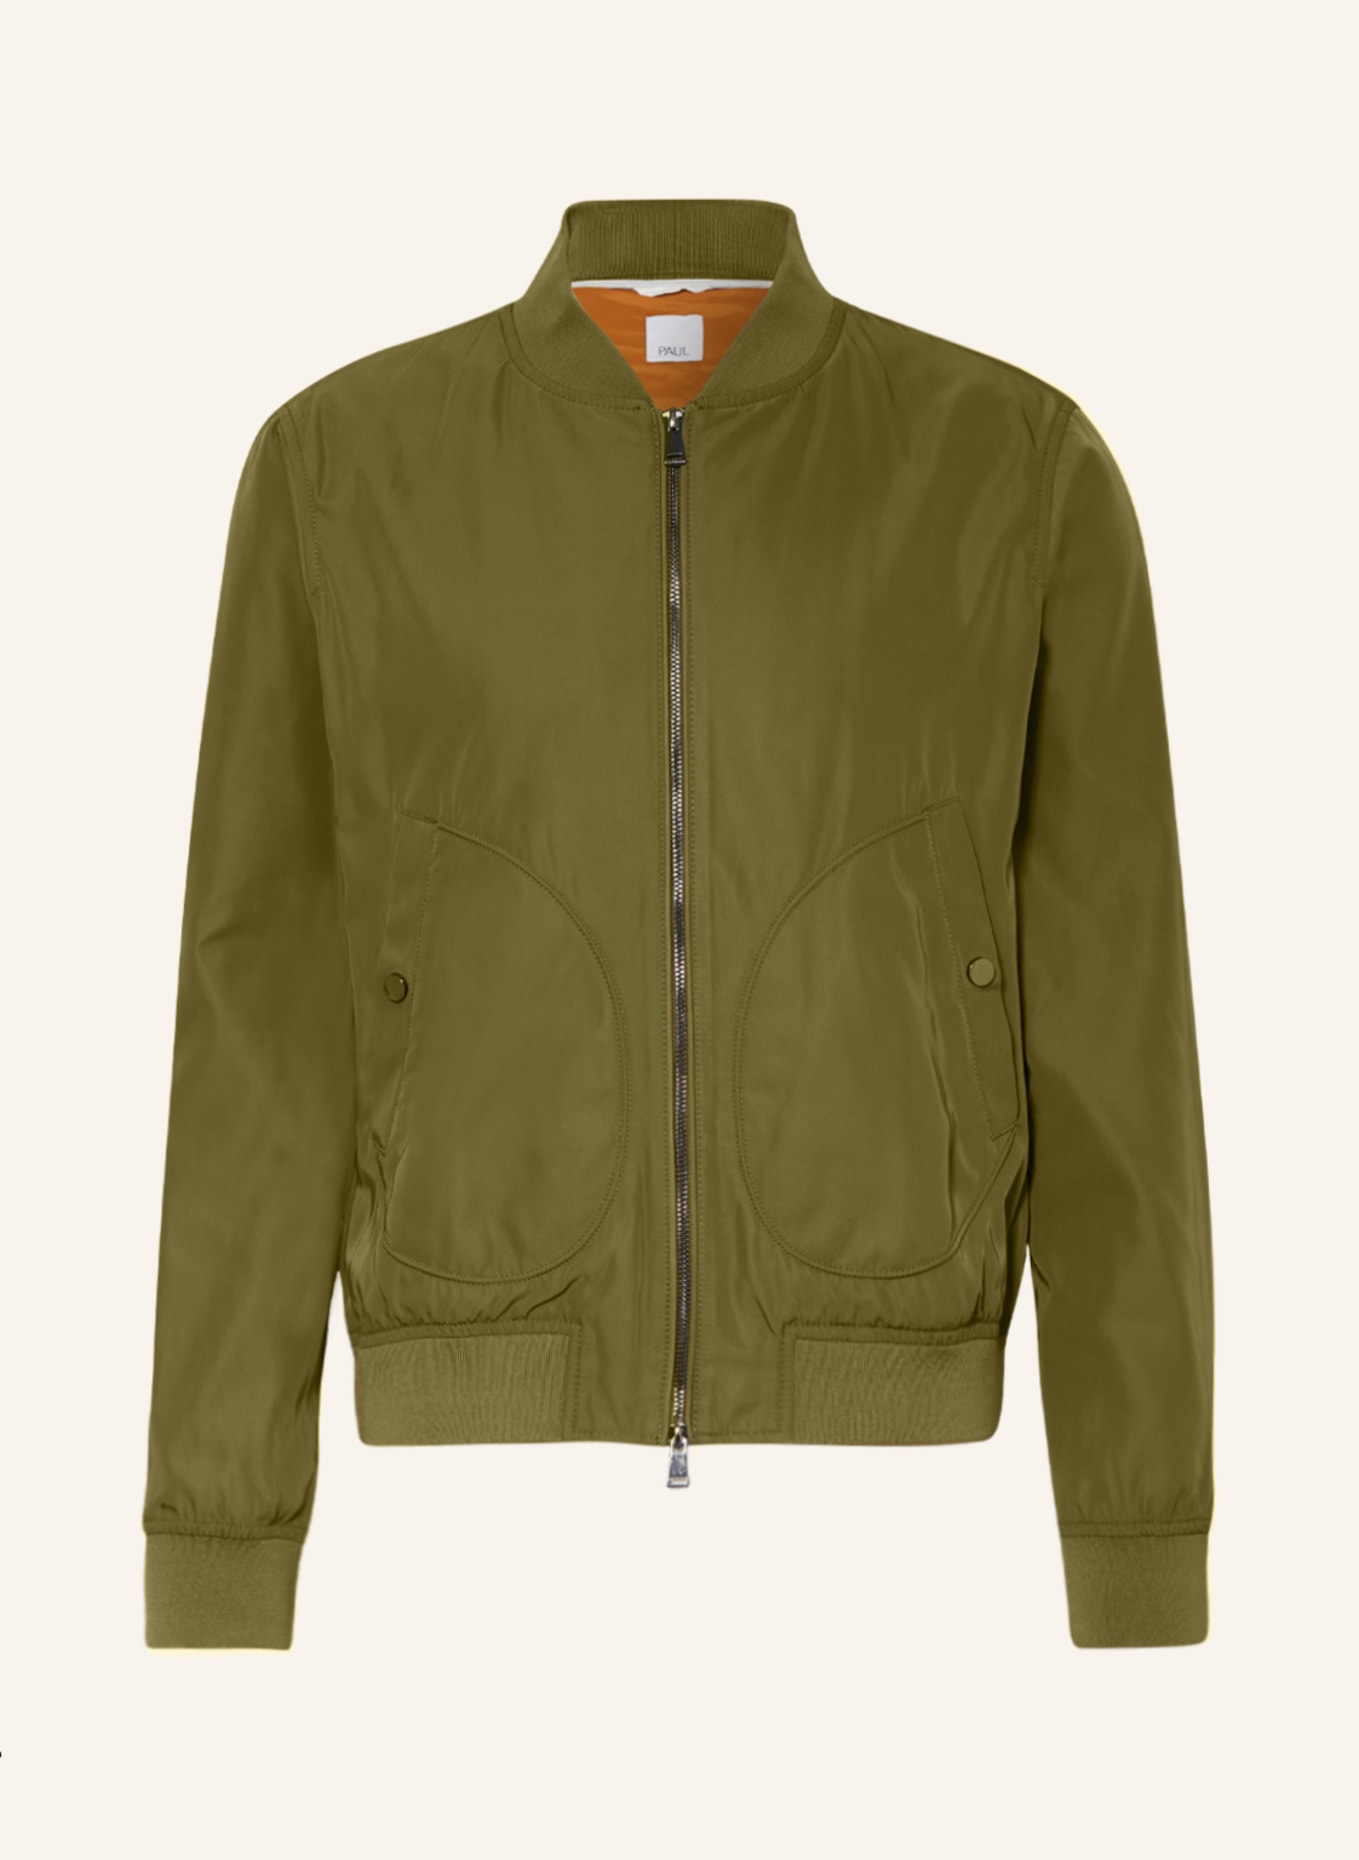 PAUL Bomber jacket, Color: OLIVE (Image 1)